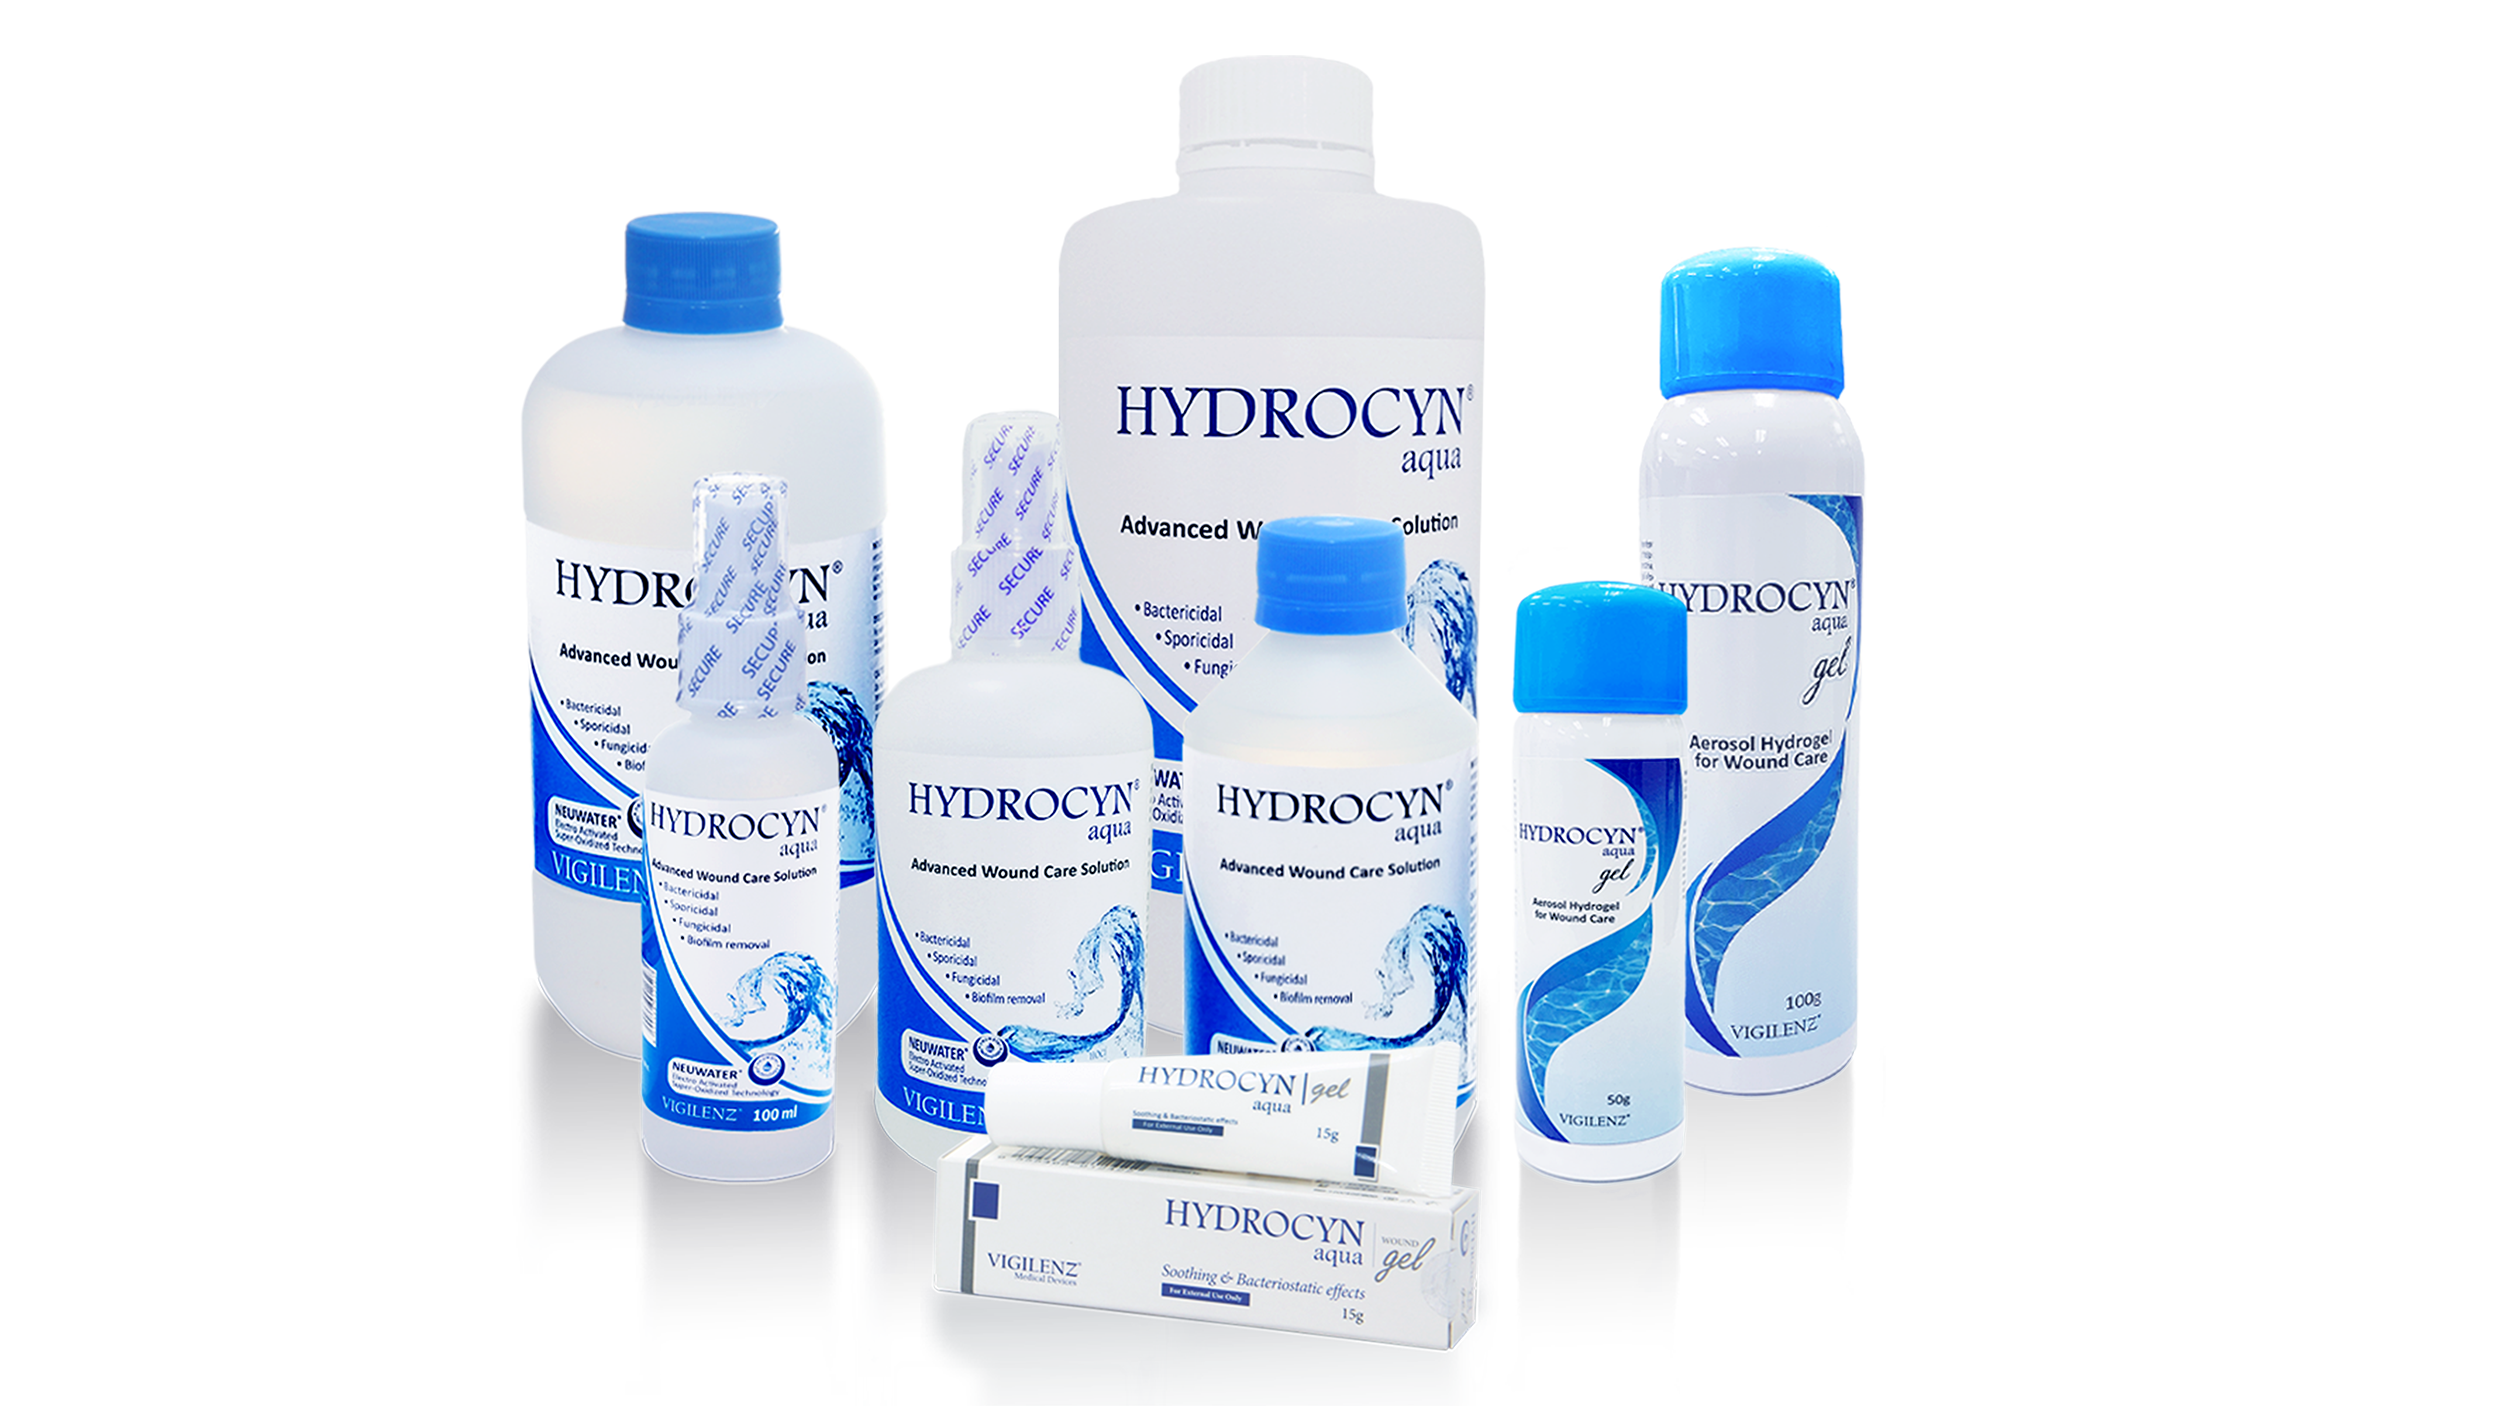 Hydrocyn aqua